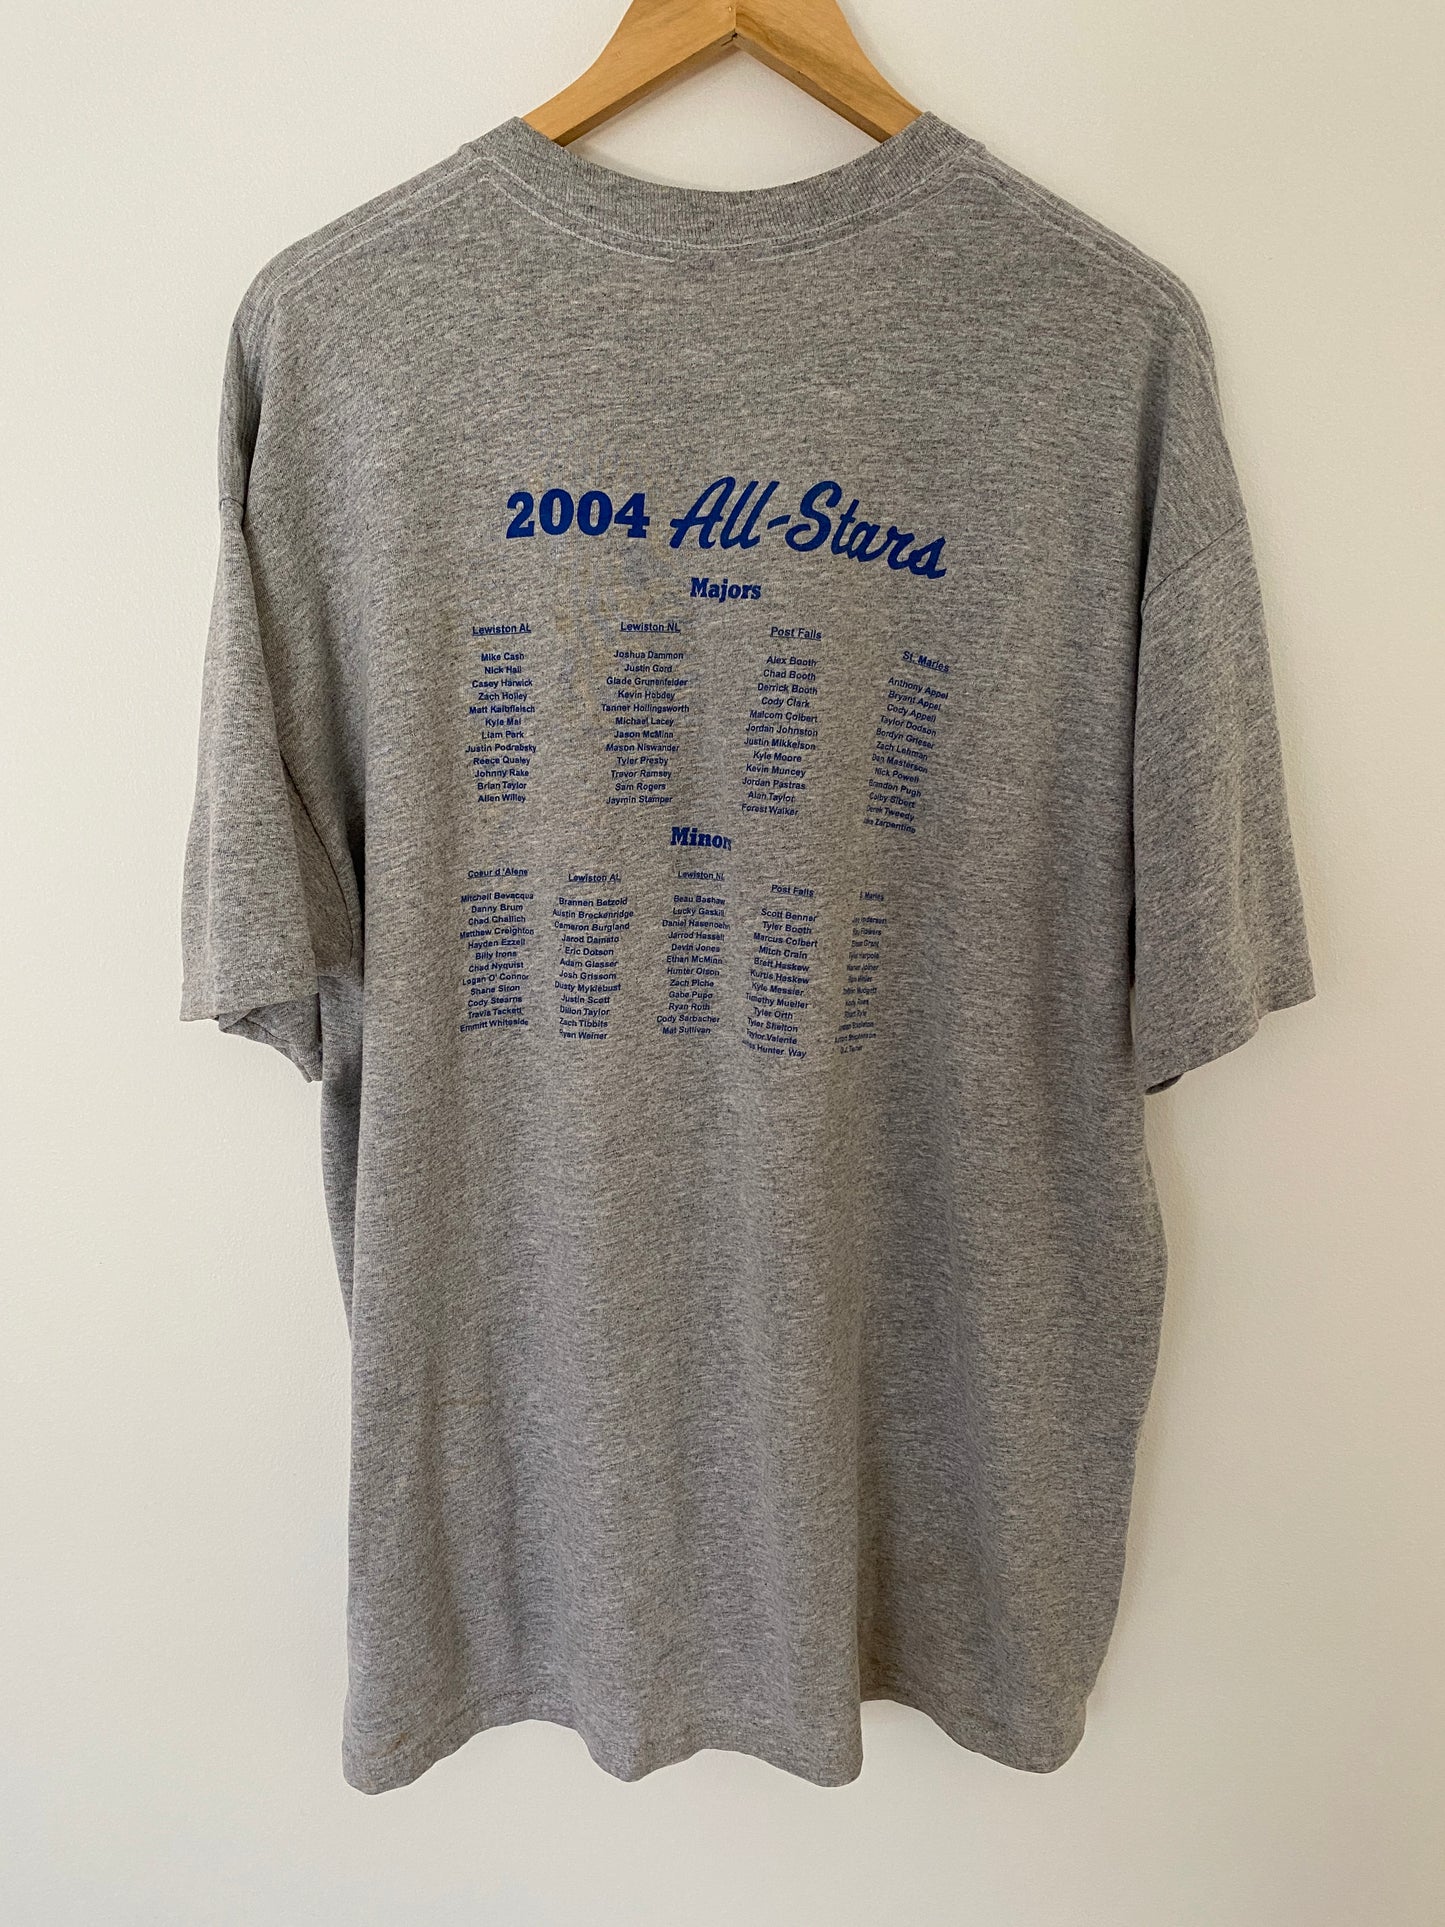 2004 All Stars Little League Tournament T-Shirt - XL